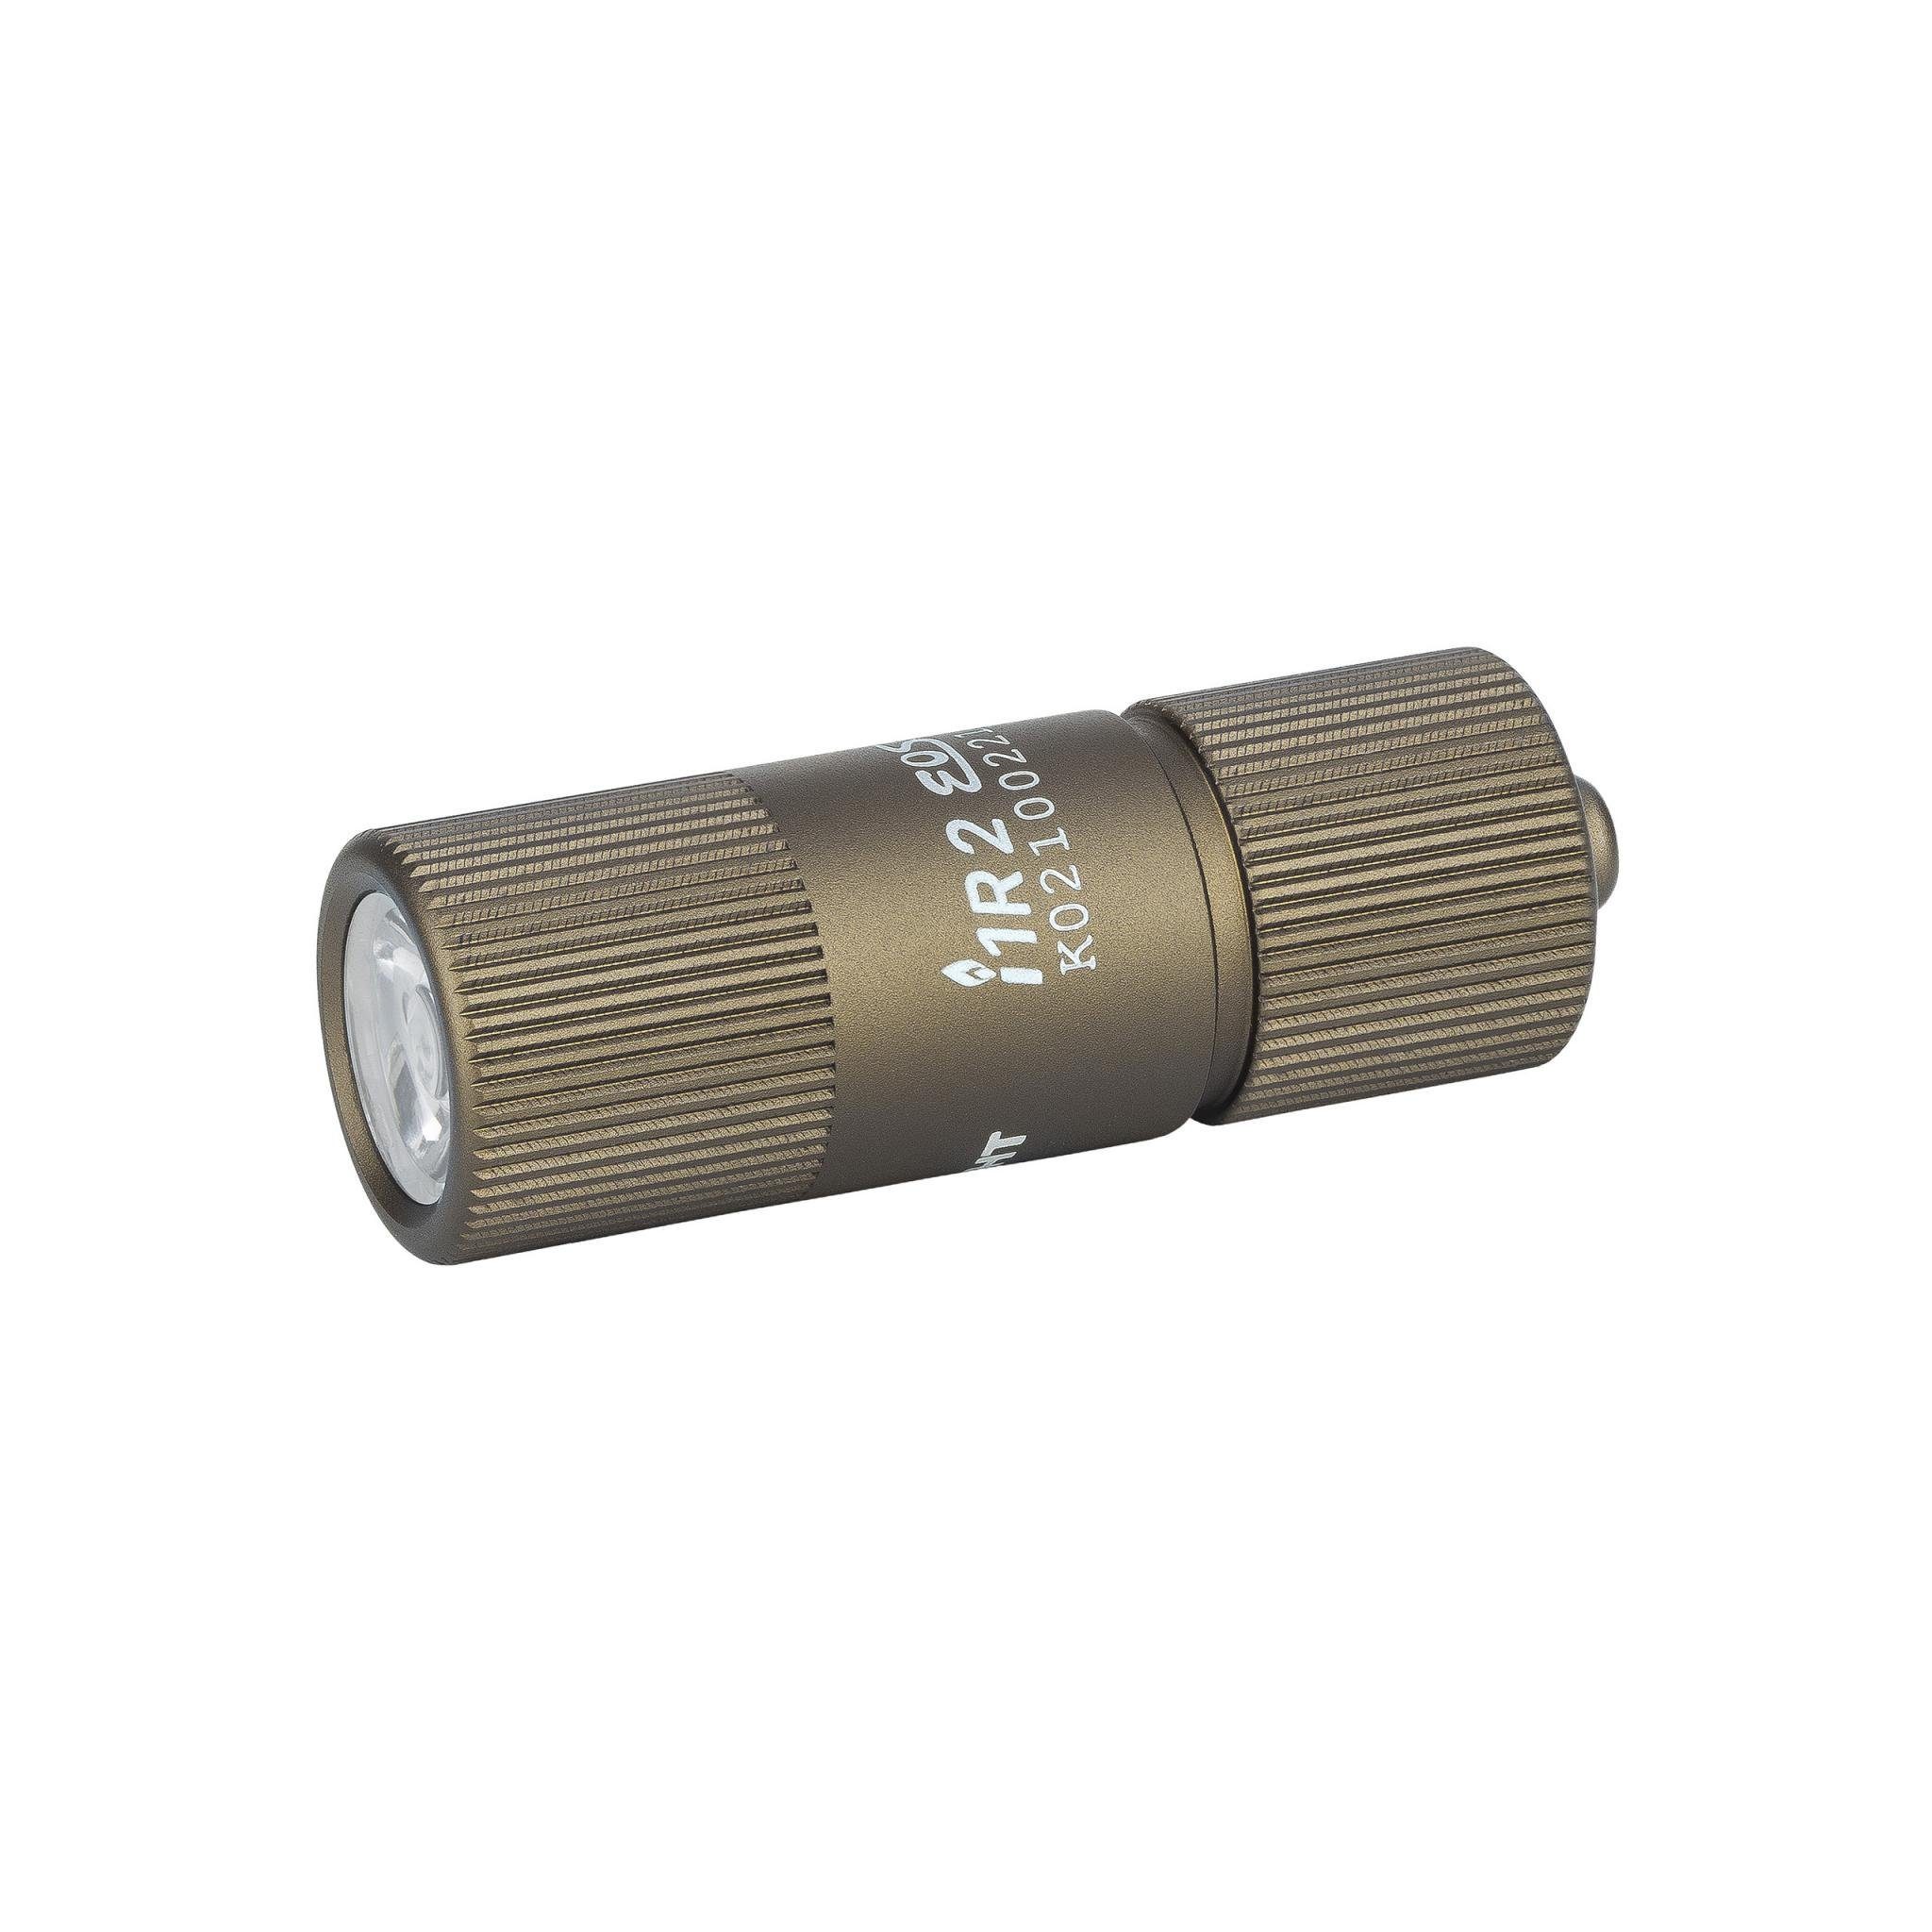 Lumen LED Mini II desert 150 I1R OLIGHT Taschenlampe Schlüsselbund Taschenlampe